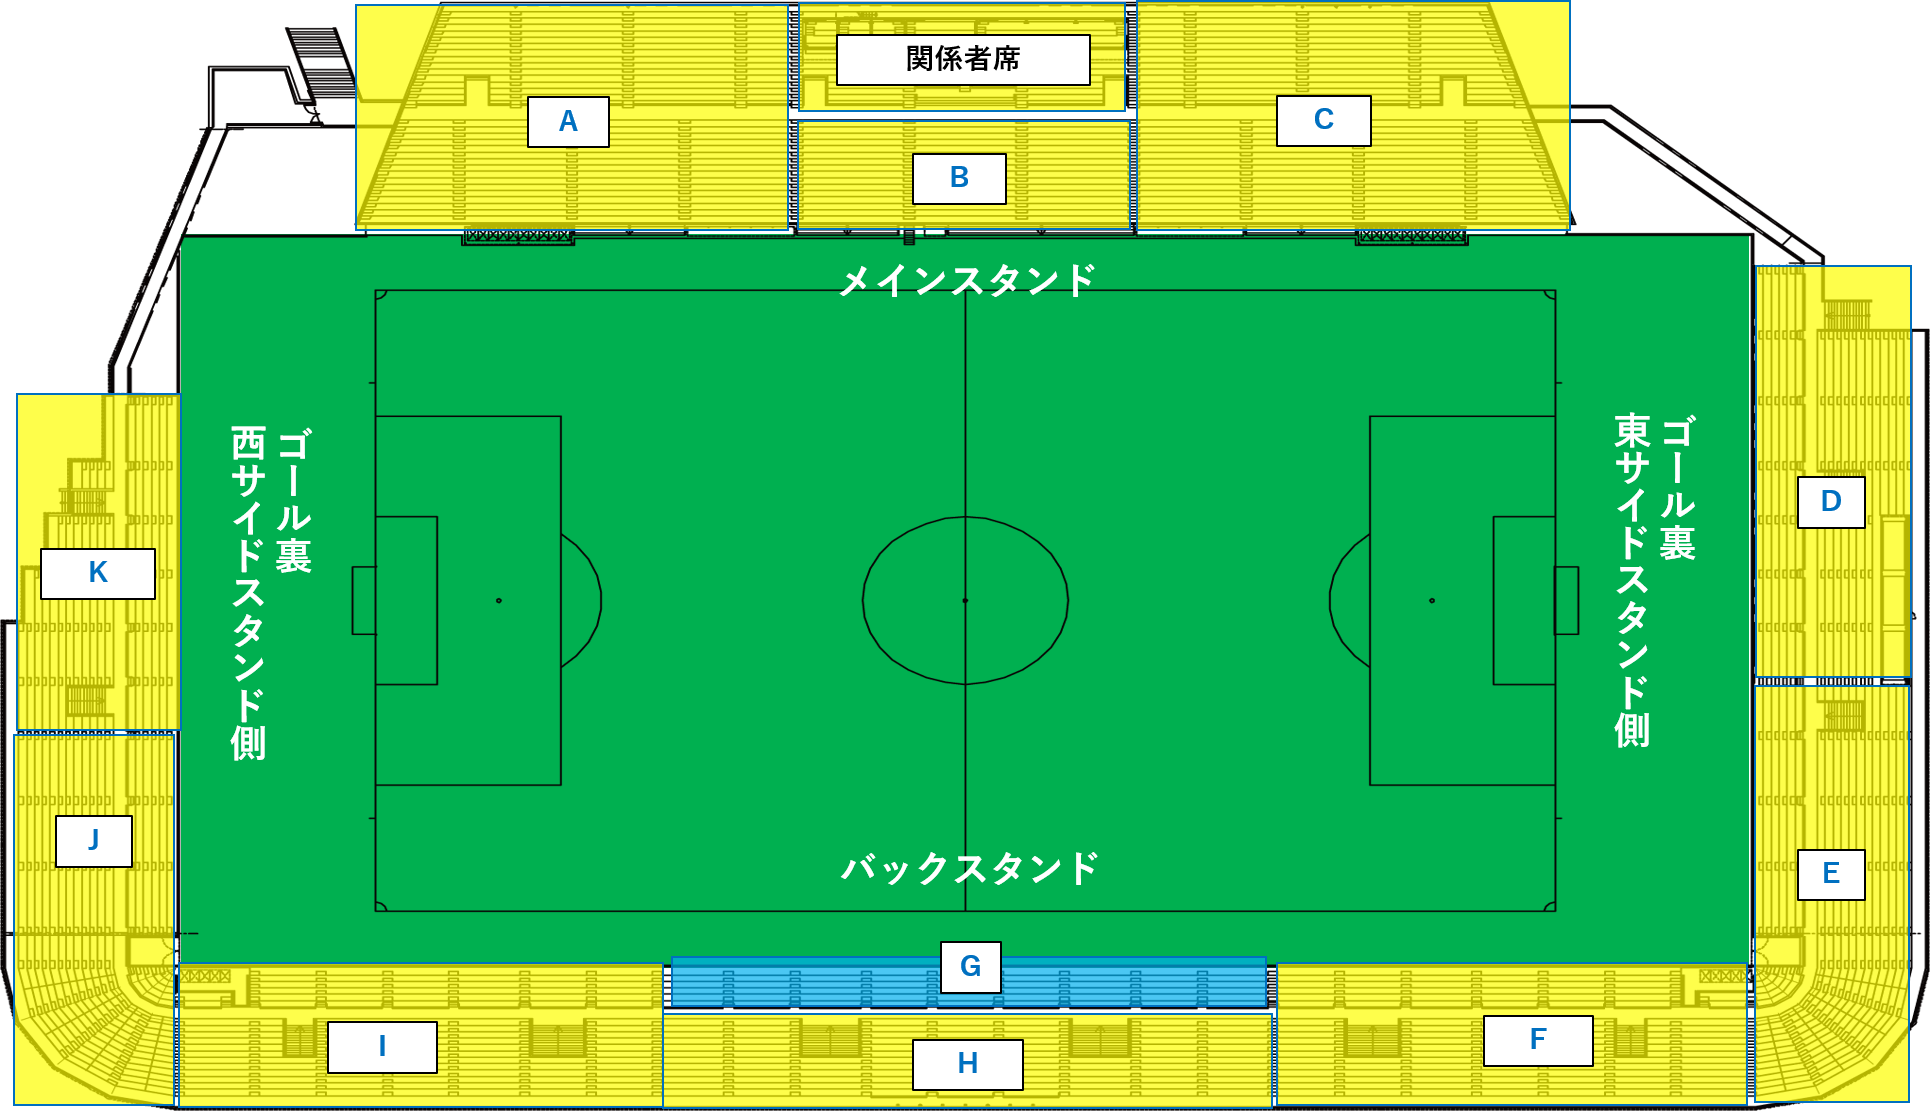 ８月試合開催における座席のゾーン割り変更のお知らせ 横浜fcオフィシャルウェブサイト